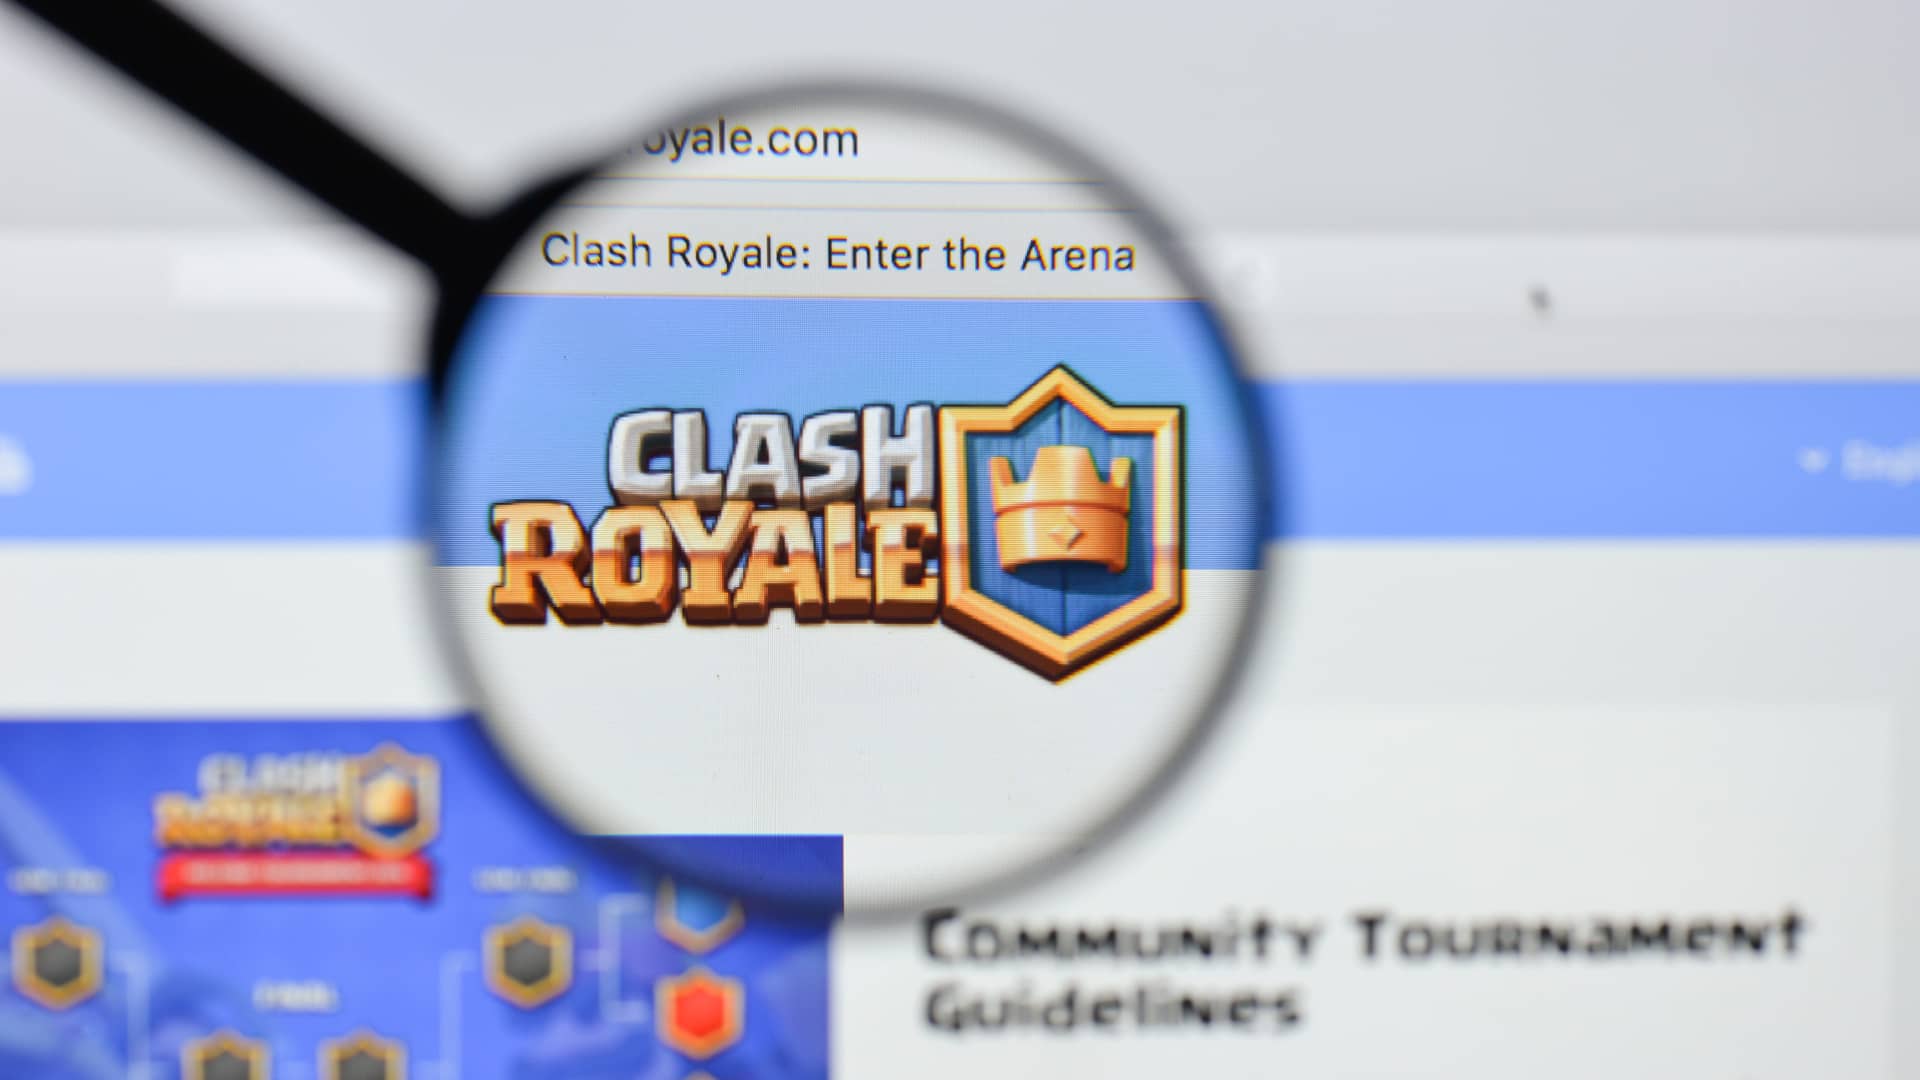 persona buscando en el navegador del ordenador guias del juego clash royale